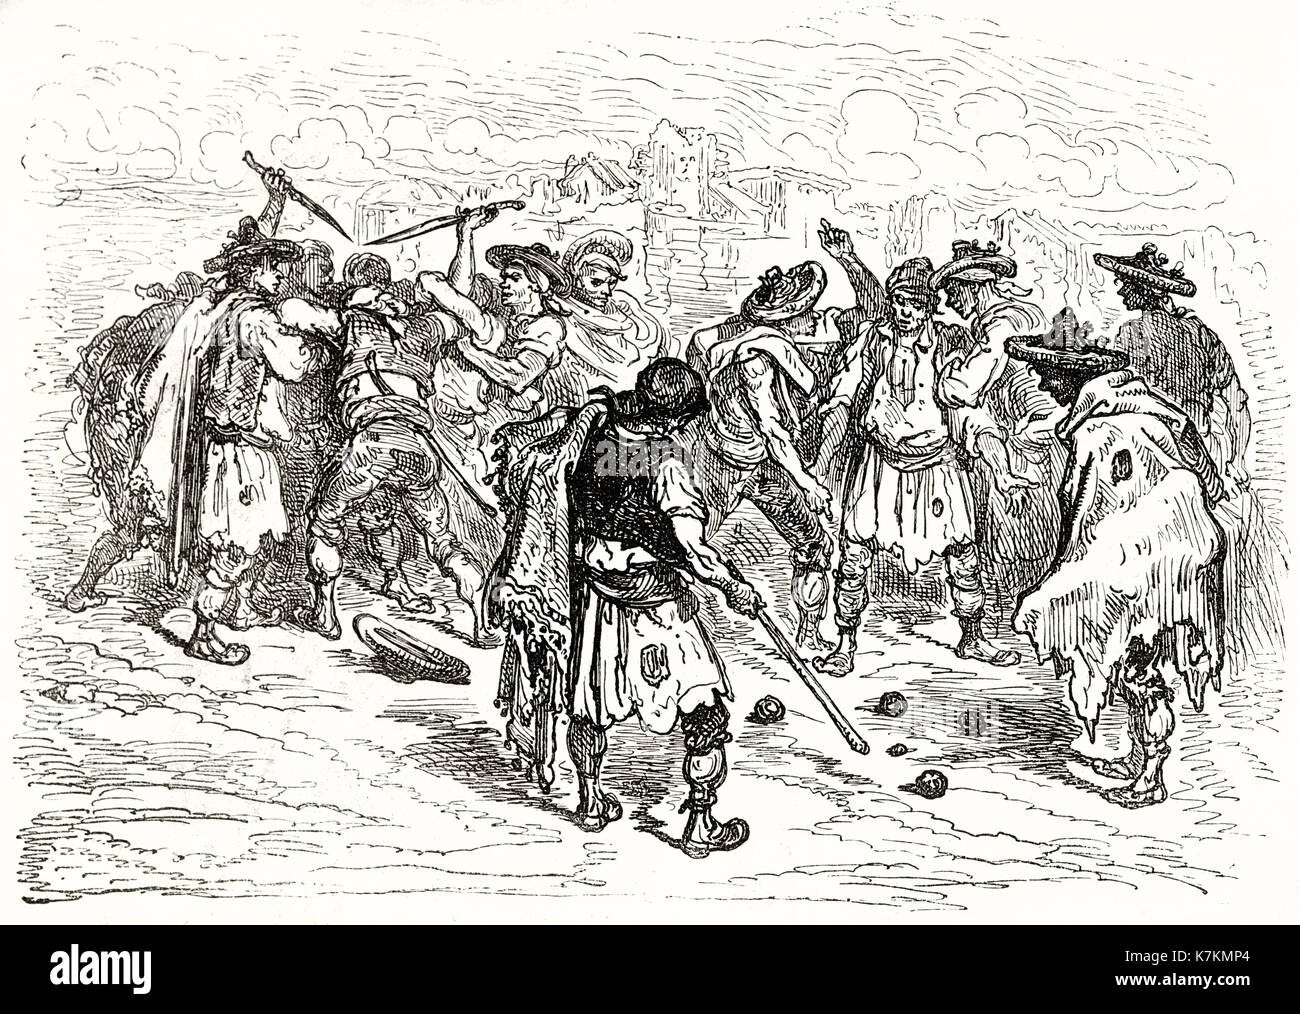 Bowls players quarrel in Valencia, Spain. By Dore, publ. on Le Tour du Monde, Paris, 1862 Stock Photo